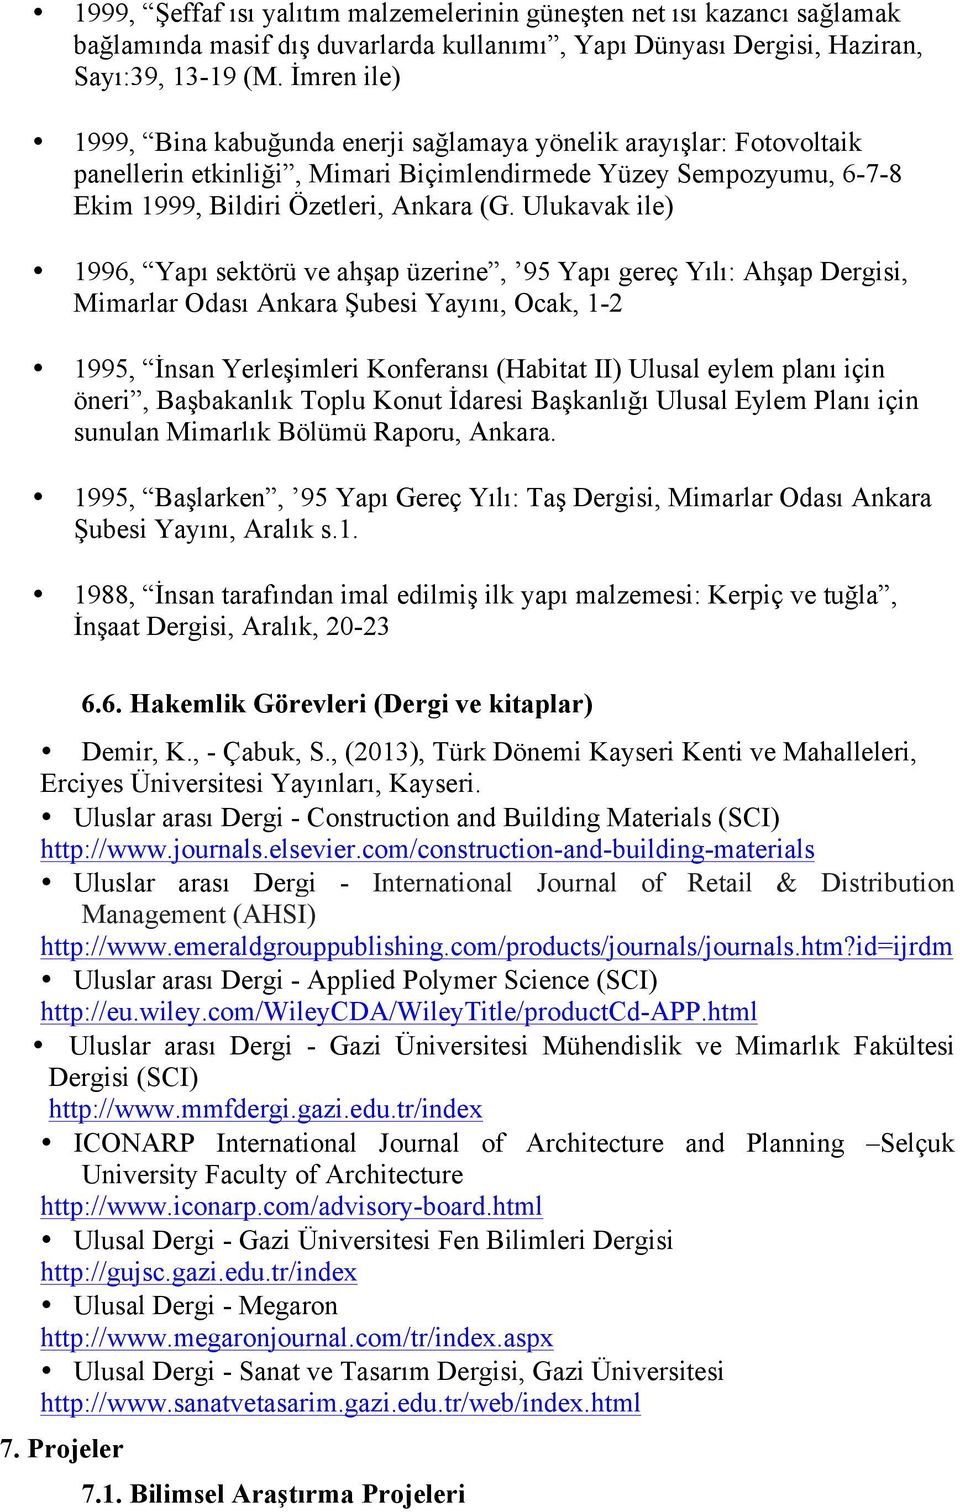 Ulukavak ile) 1996, Yapı sektörü ve ahşap üzerine, 95 Yapı gereç Yılı: Ahşap Dergisi, Mimarlar Odası Ankara Şubesi Yayını, Ocak, 1-2 1995, İnsan Yerleşimleri Konferansı (Habitat II) Ulusal eylem